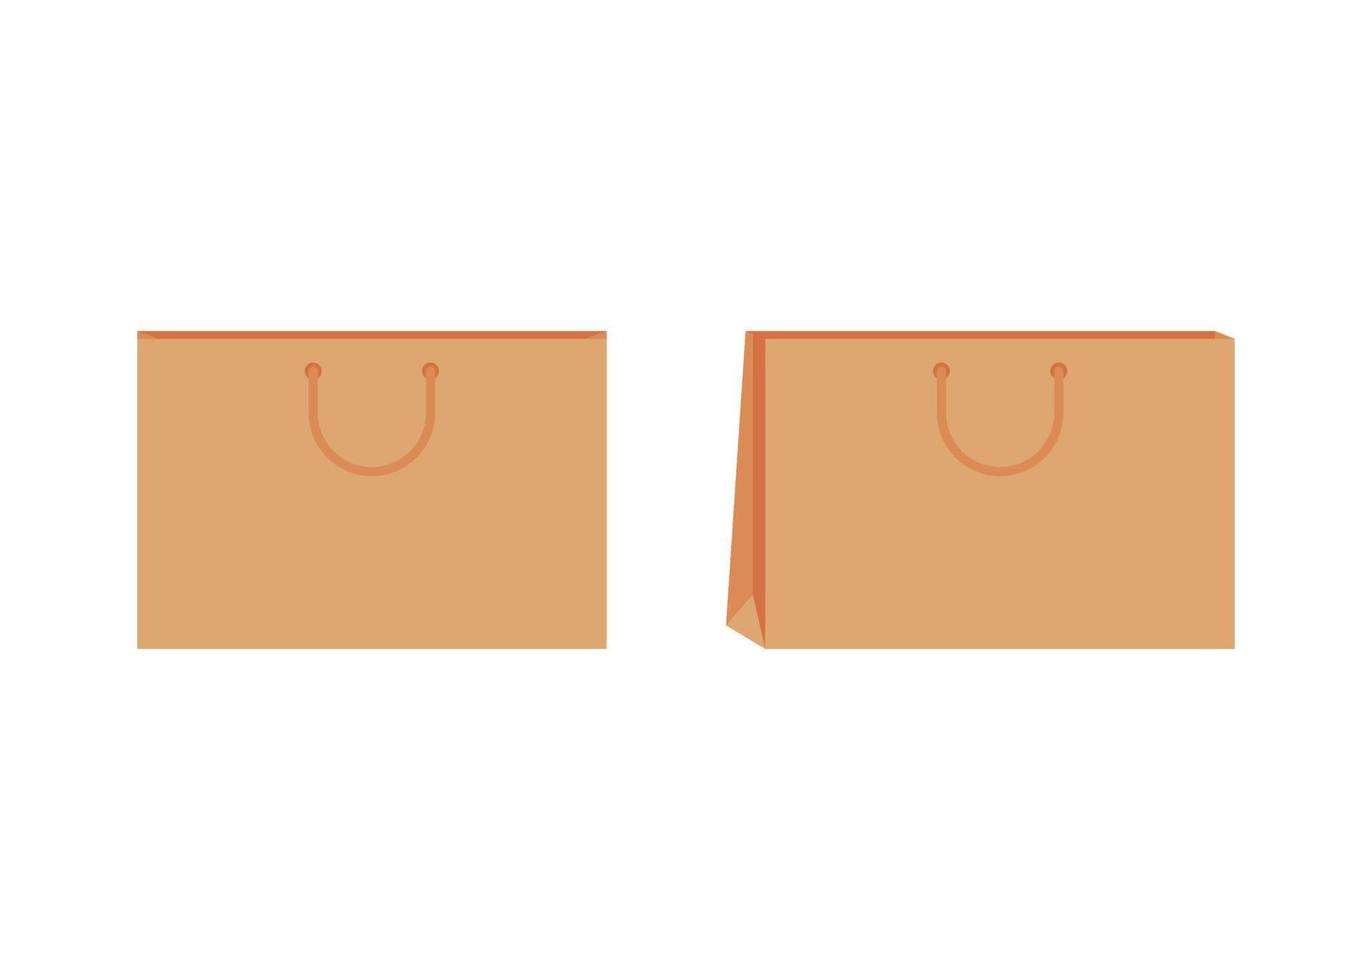 papper väska med hantera mall av handla. brun hantverk papper packa för gåva, mat, Artikel. ta bort, leverans service i eco väska. prototyper främre och halv sväng. vektor illustration